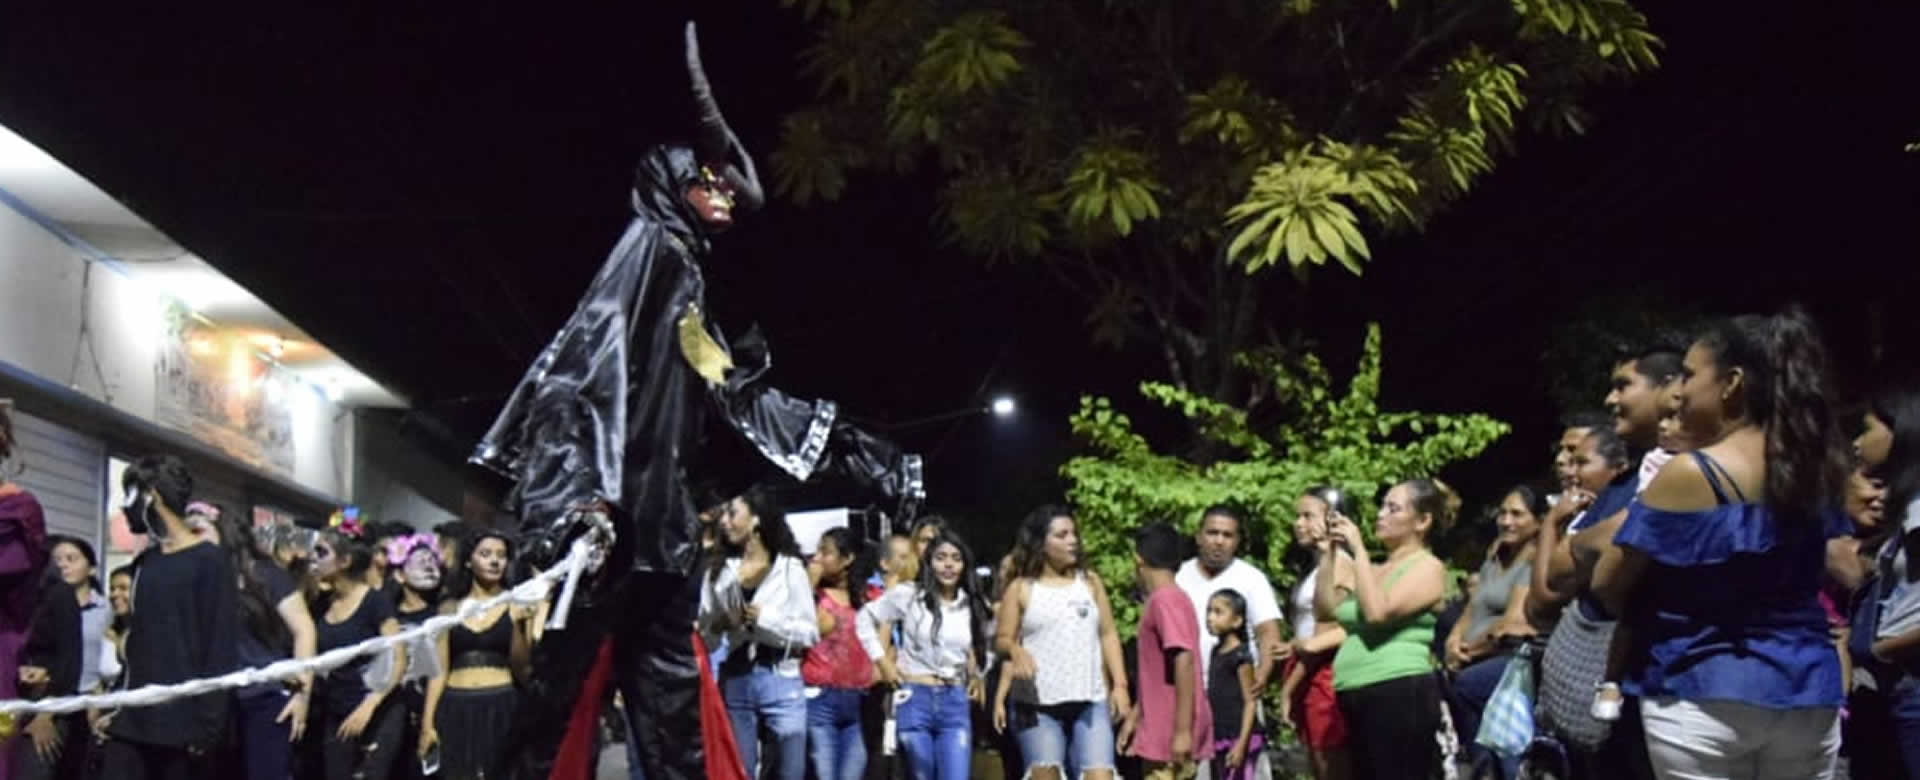 Familias de León disfrutan del XVII Carnaval de Mitos y Leyendas